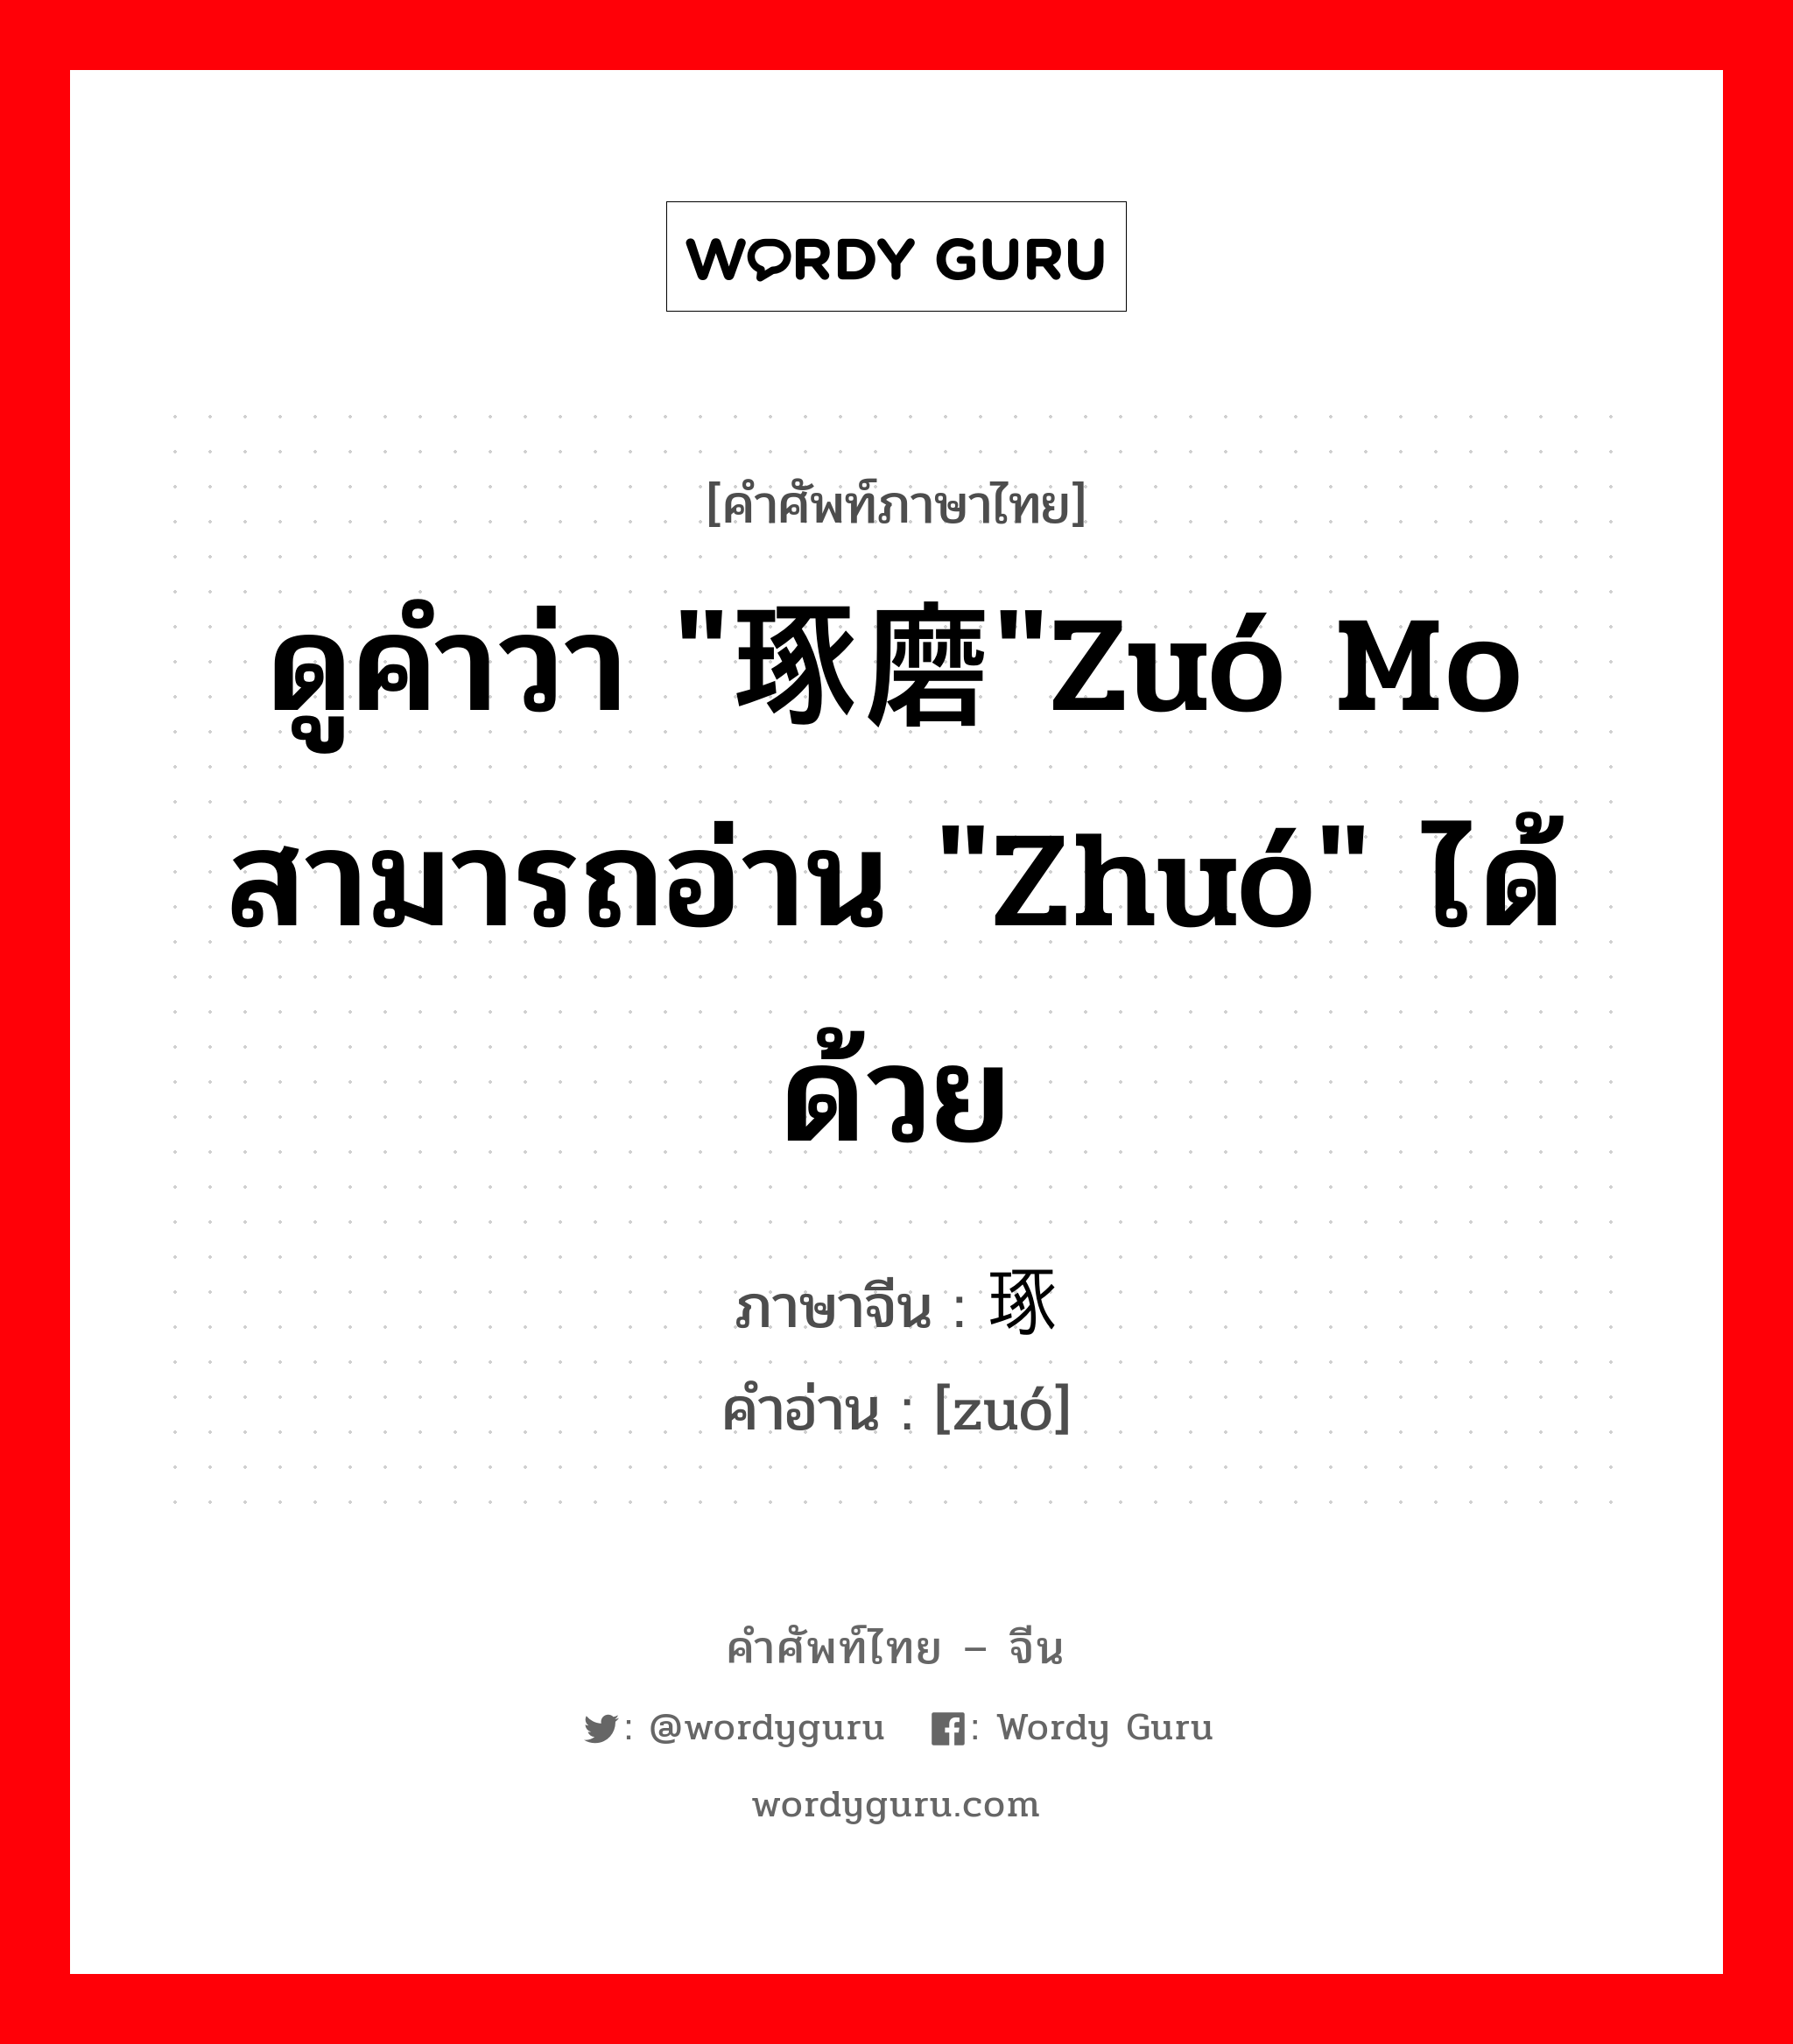 ดูคำว่า "琢磨"zuó mo สามารถอ่าน "zhuó" ได้ด้วย ภาษาจีนคืออะไร, คำศัพท์ภาษาไทย - จีน ดูคำว่า "琢磨"zuó mo สามารถอ่าน "zhuó" ได้ด้วย ภาษาจีน 琢 คำอ่าน [zuó]